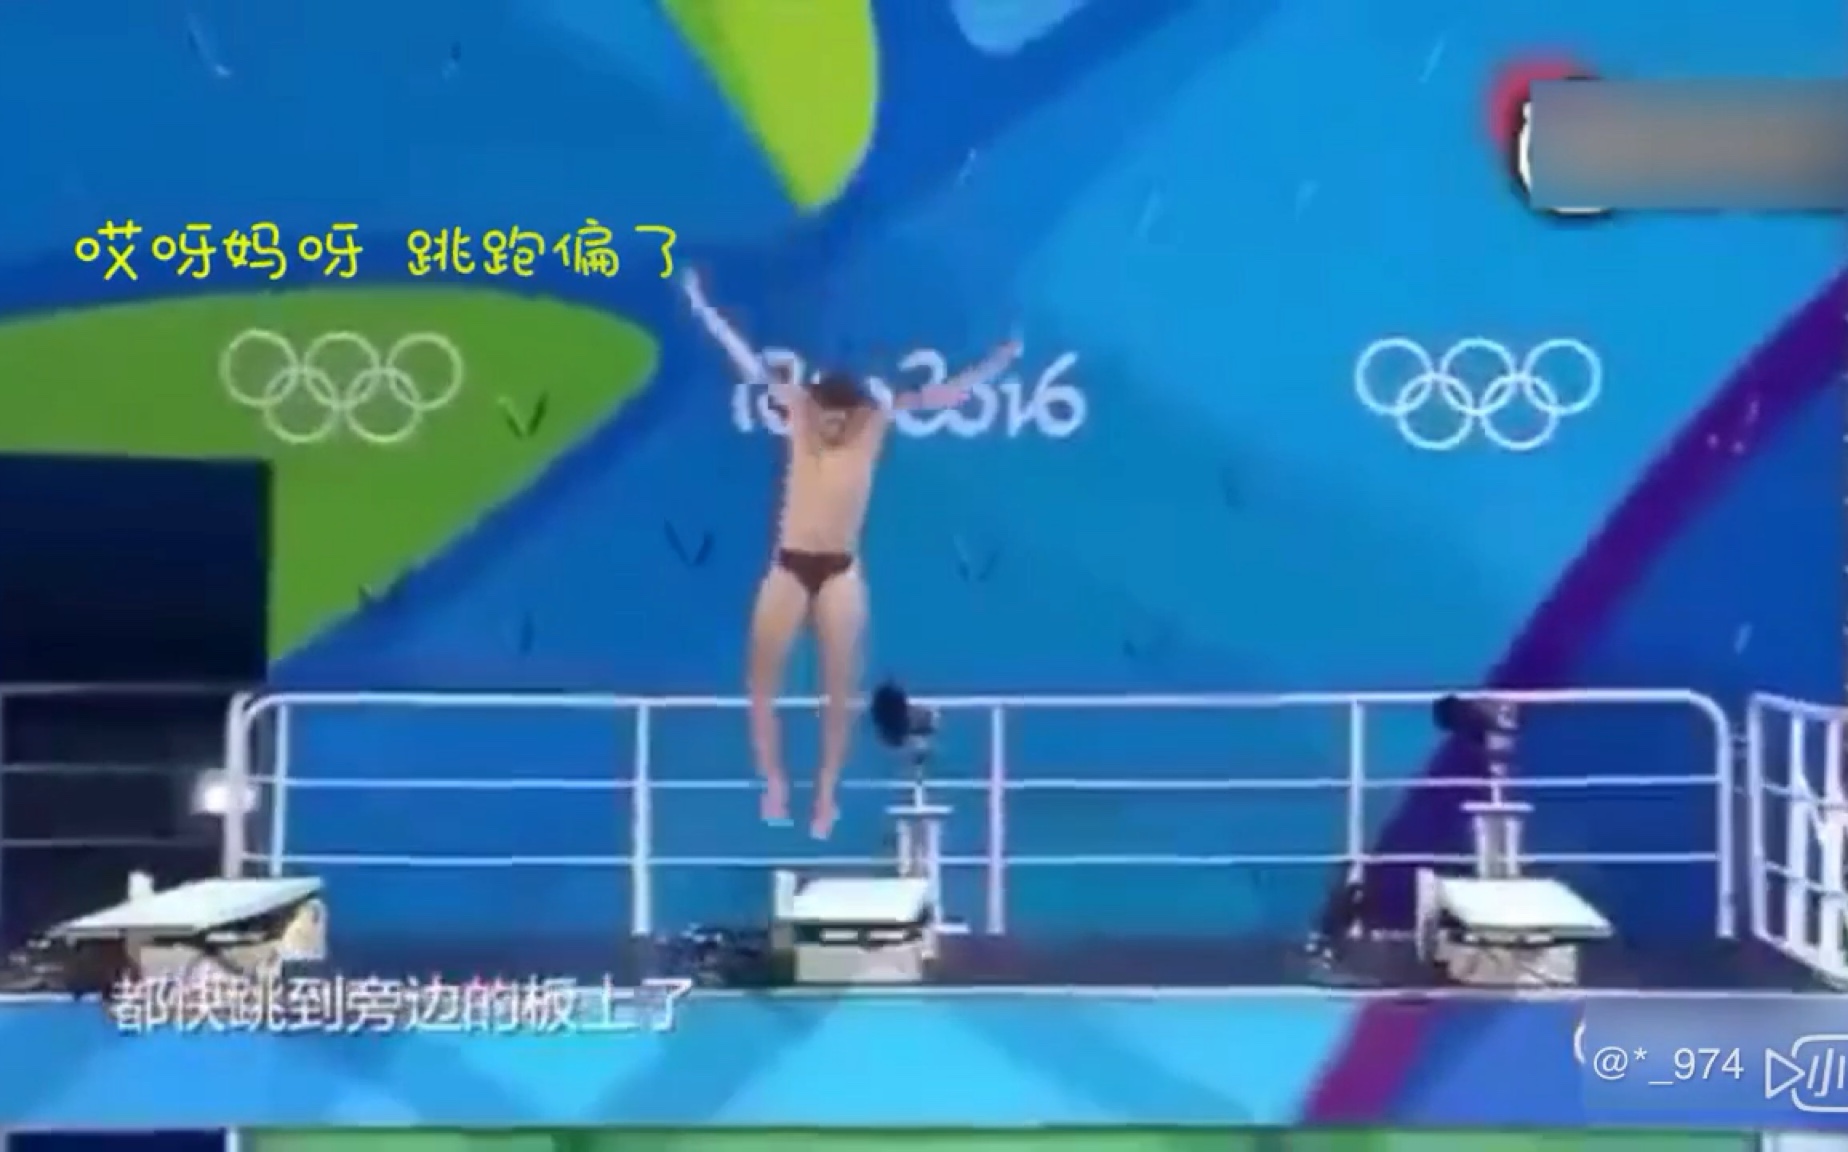 跳水搞笑出糗开心欢乐时刻集锦-体育视频-搜狐视频